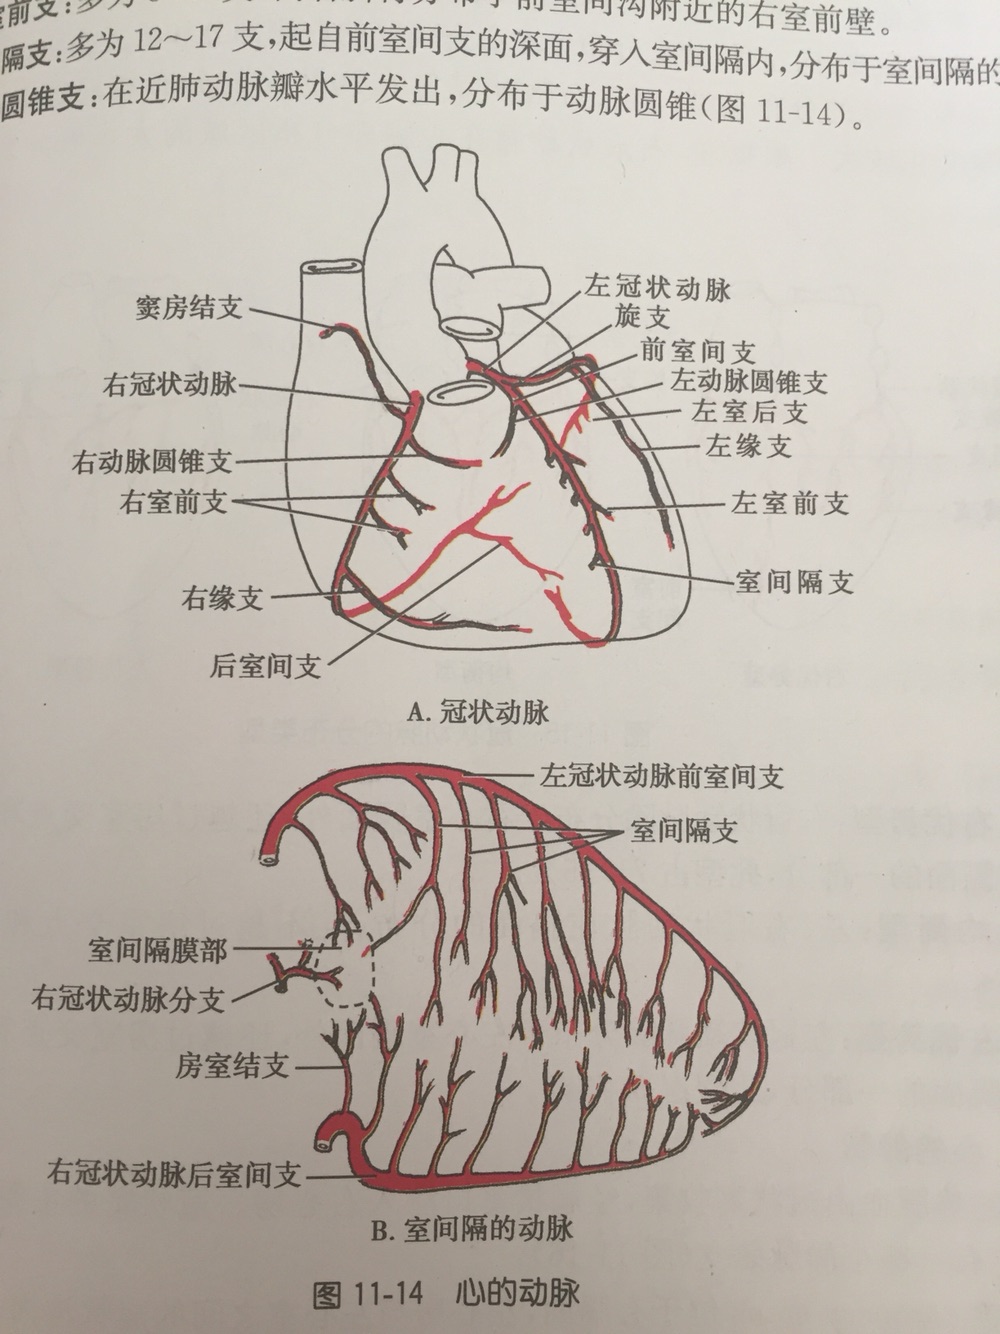 冠脉分段示意图图片